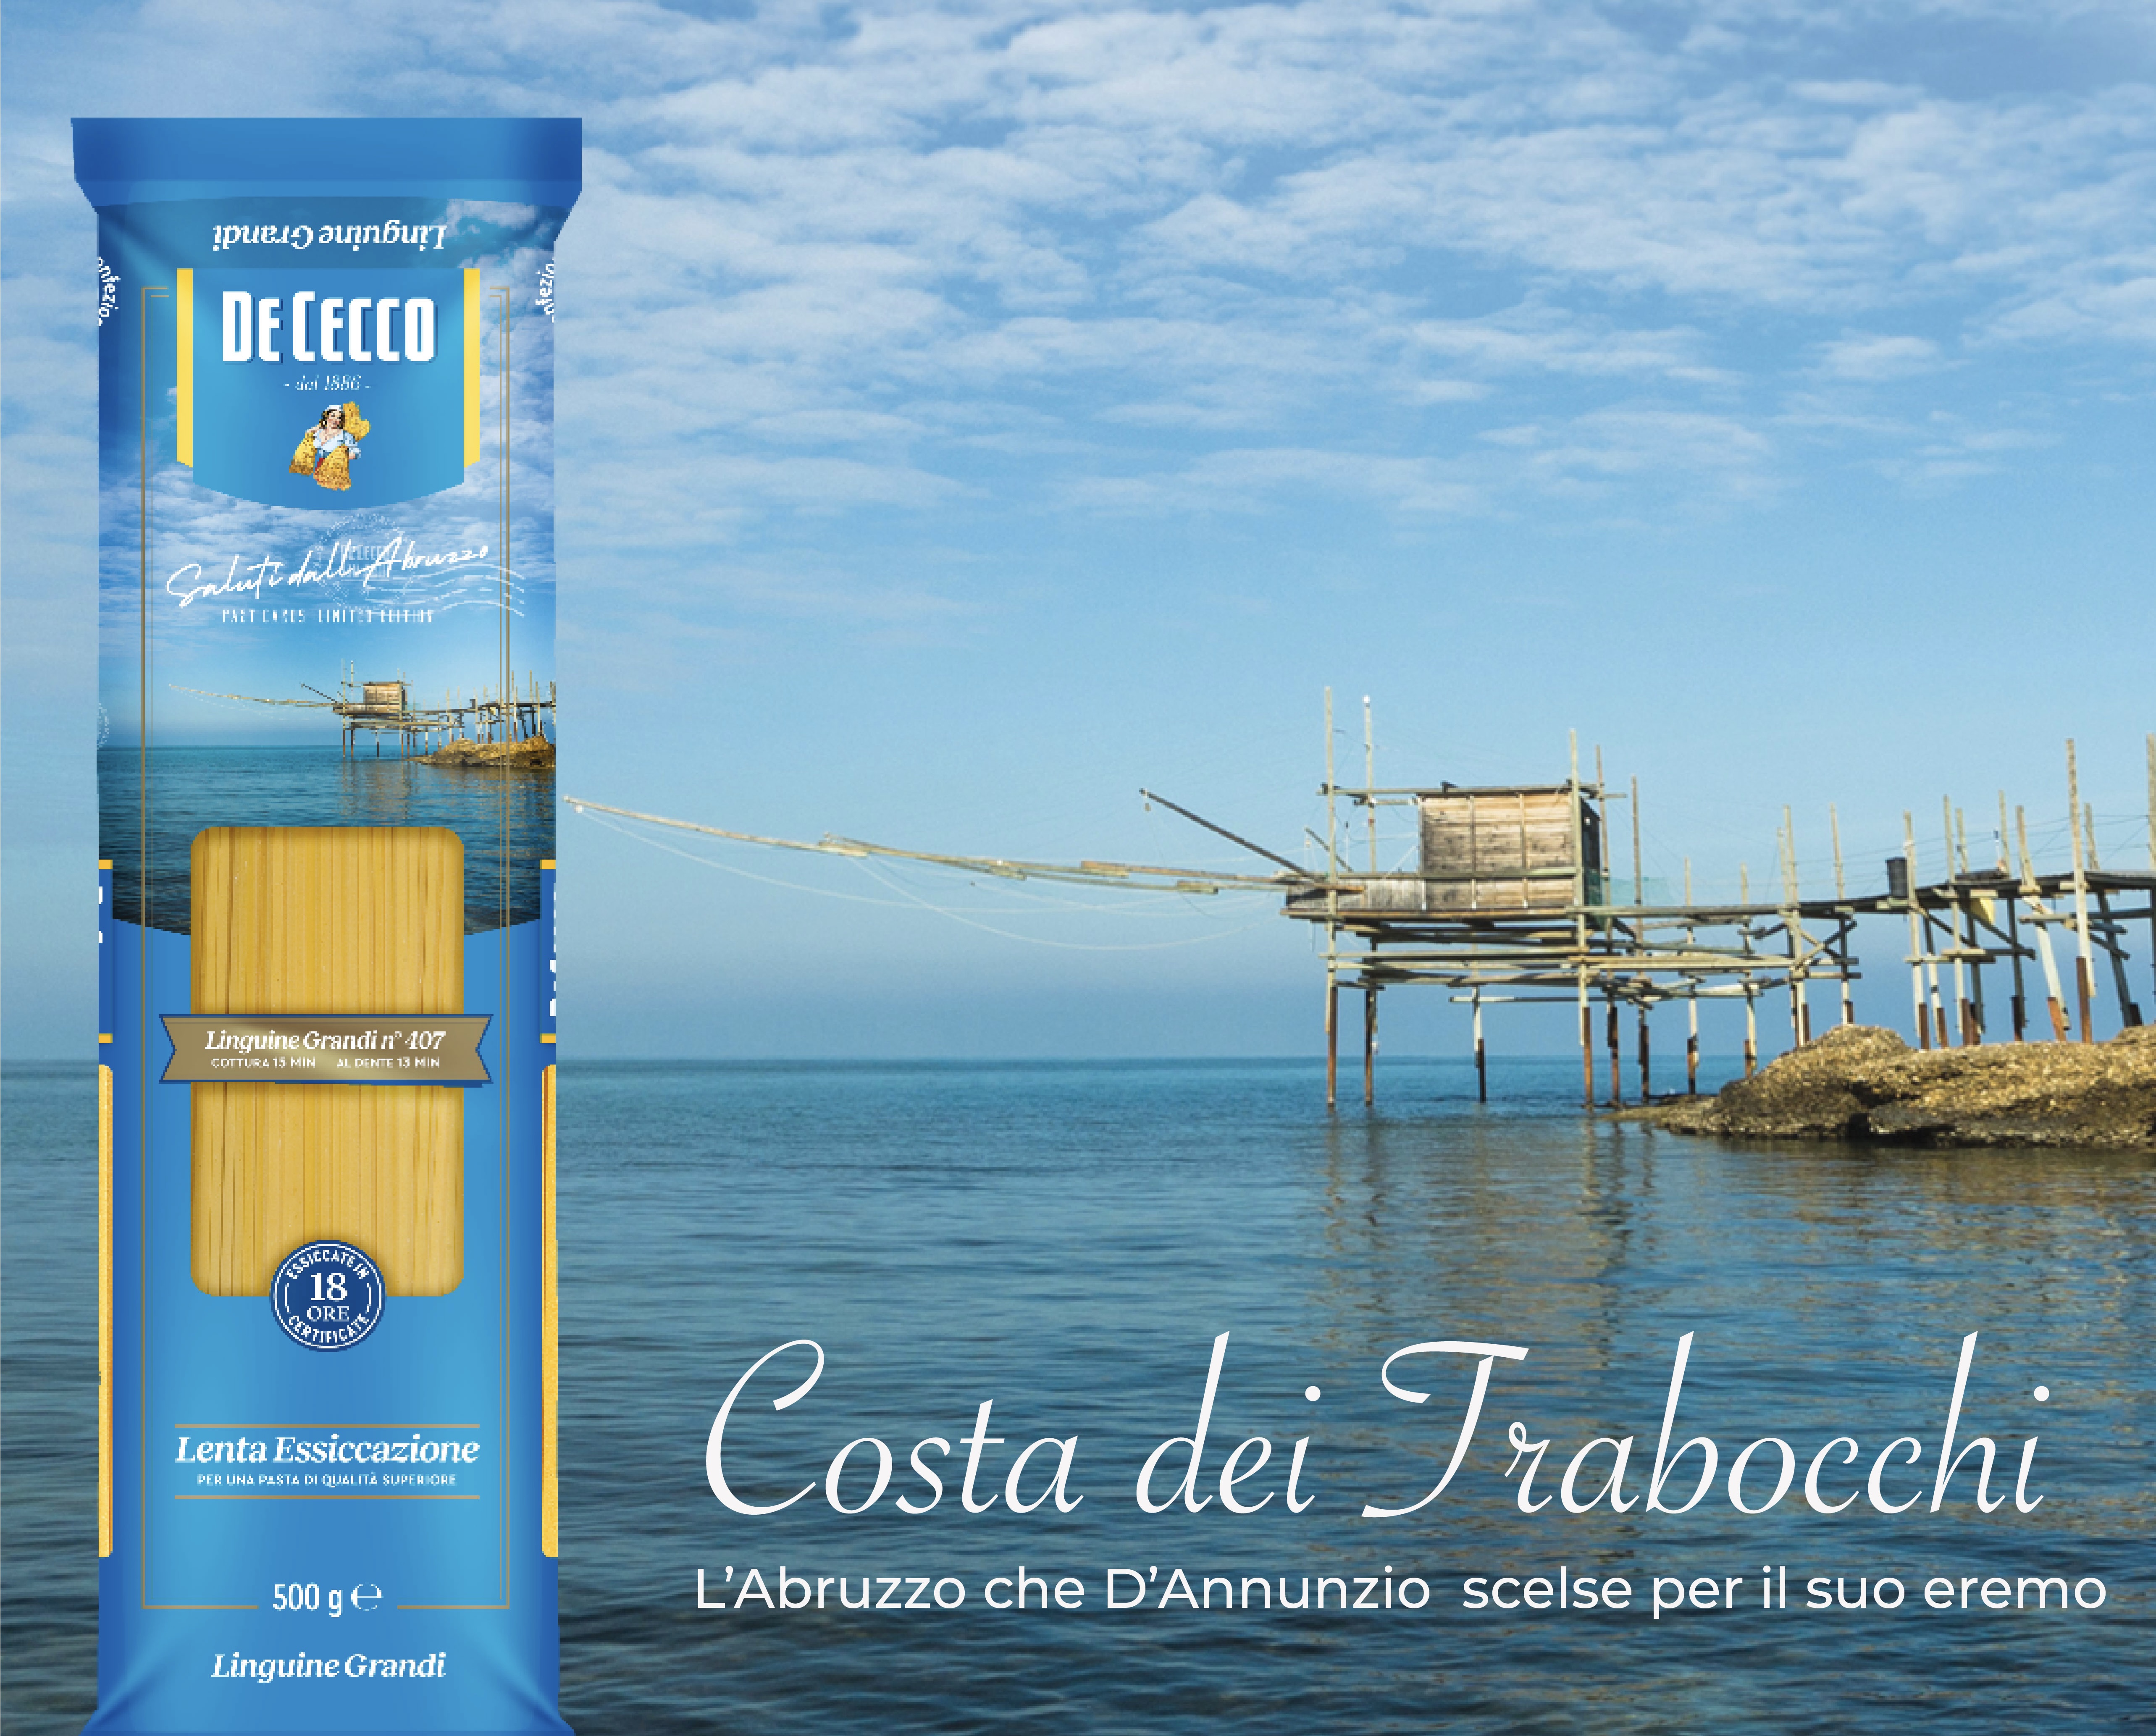 De Cecco, packaging a edizione limitata con i luoghi d'Abruzzo